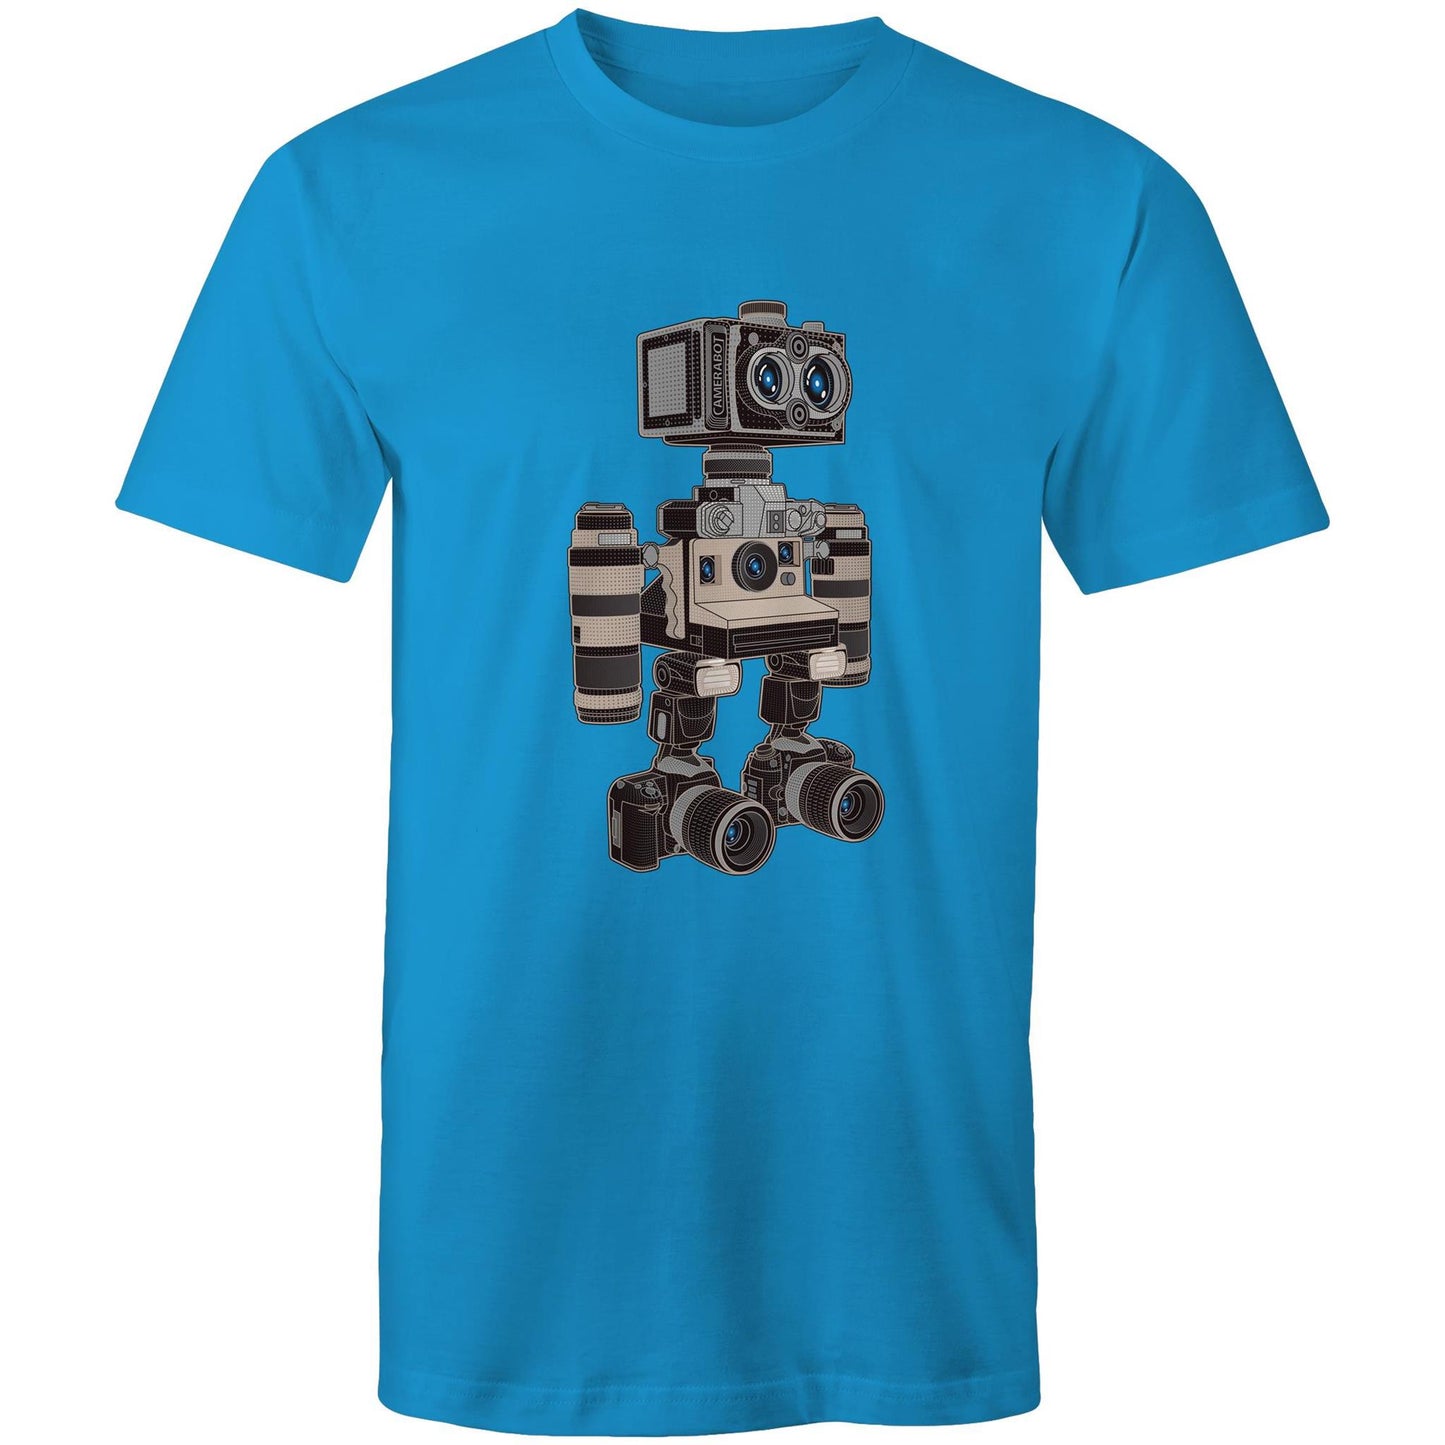 CameraBot 6000 - Men's T-Shirt